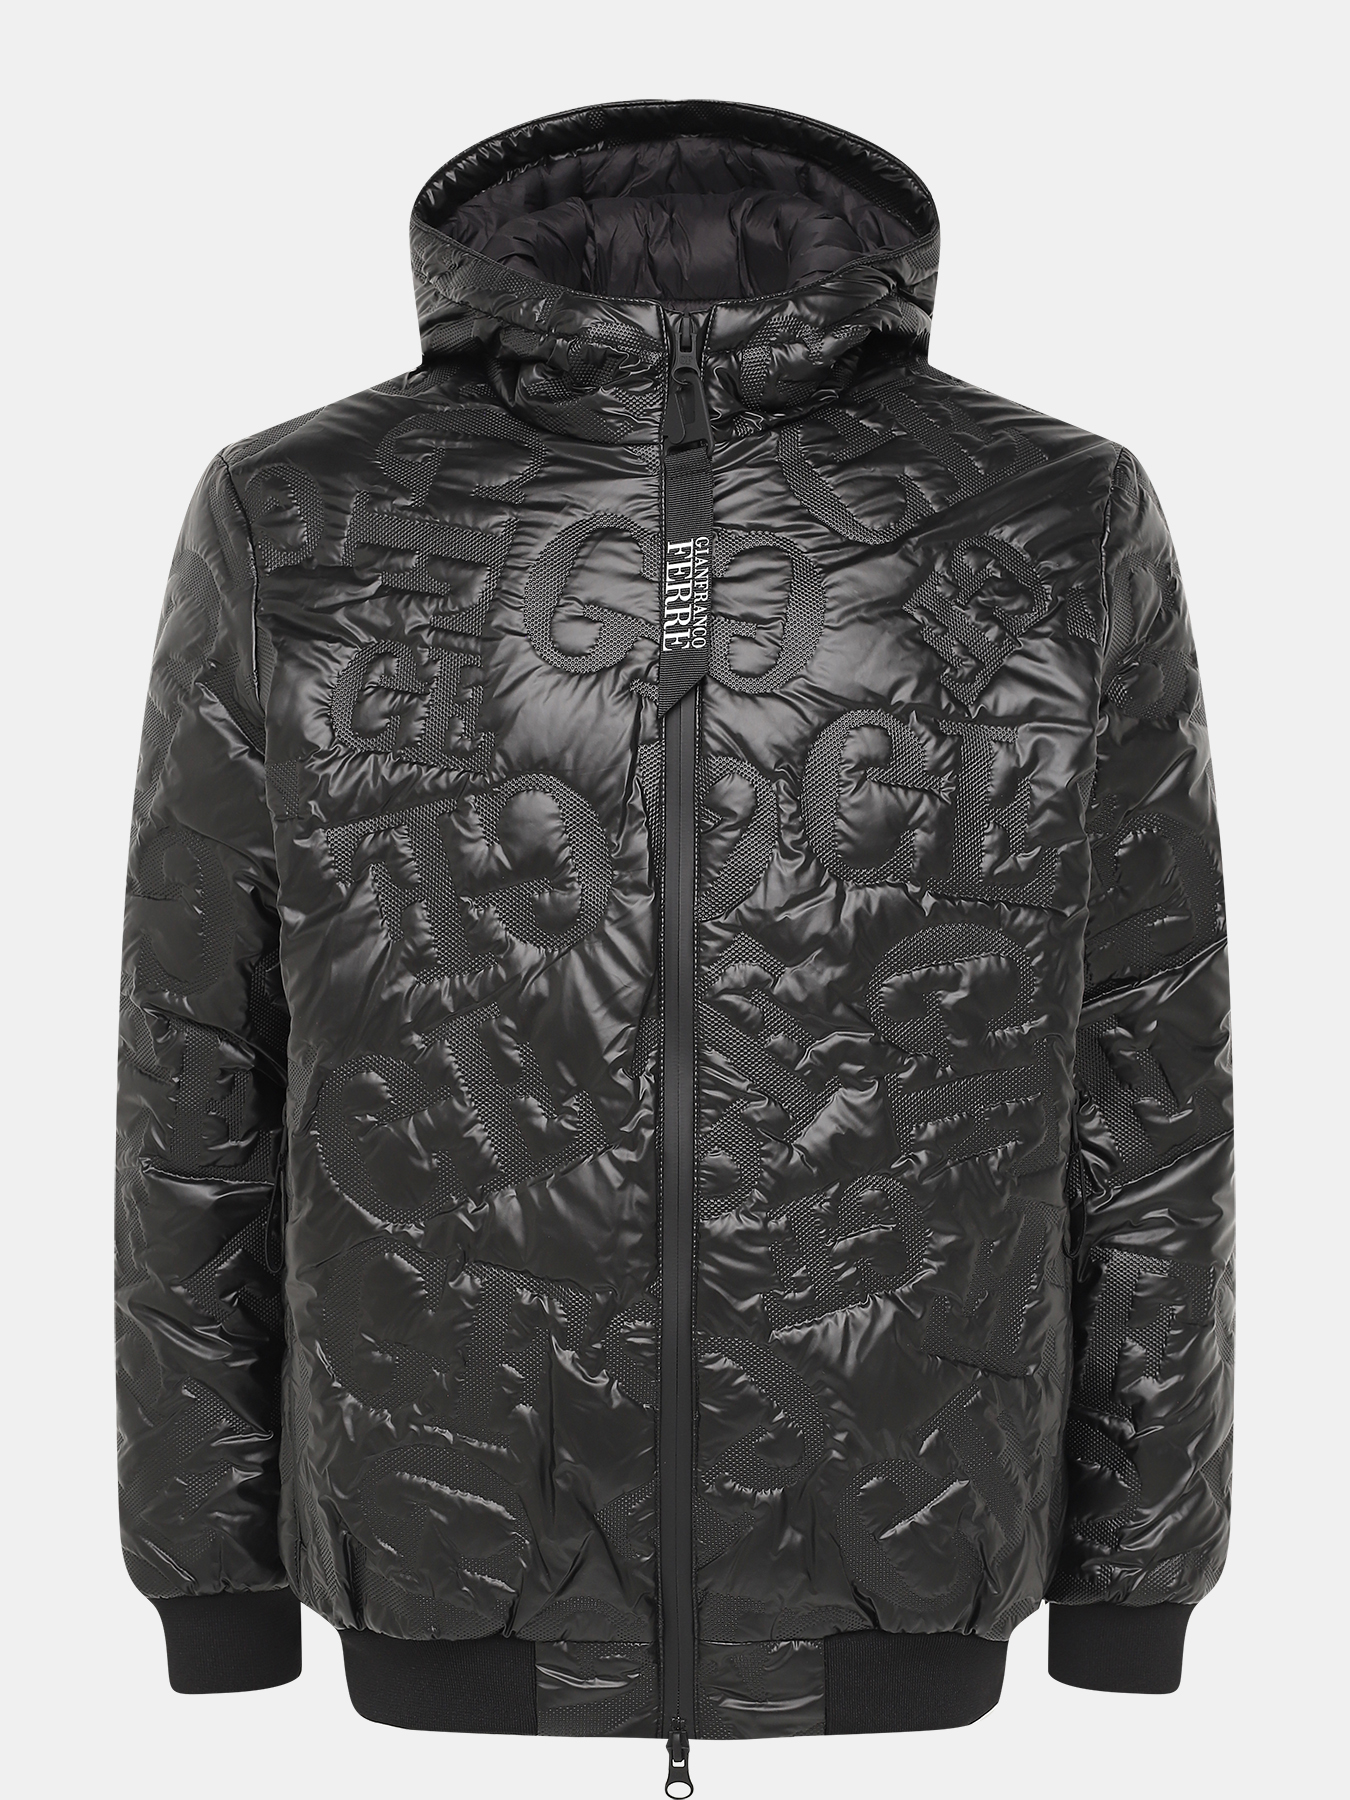 Куртка Gianfranco Ferre 418900-046, цвет черный, размер 54